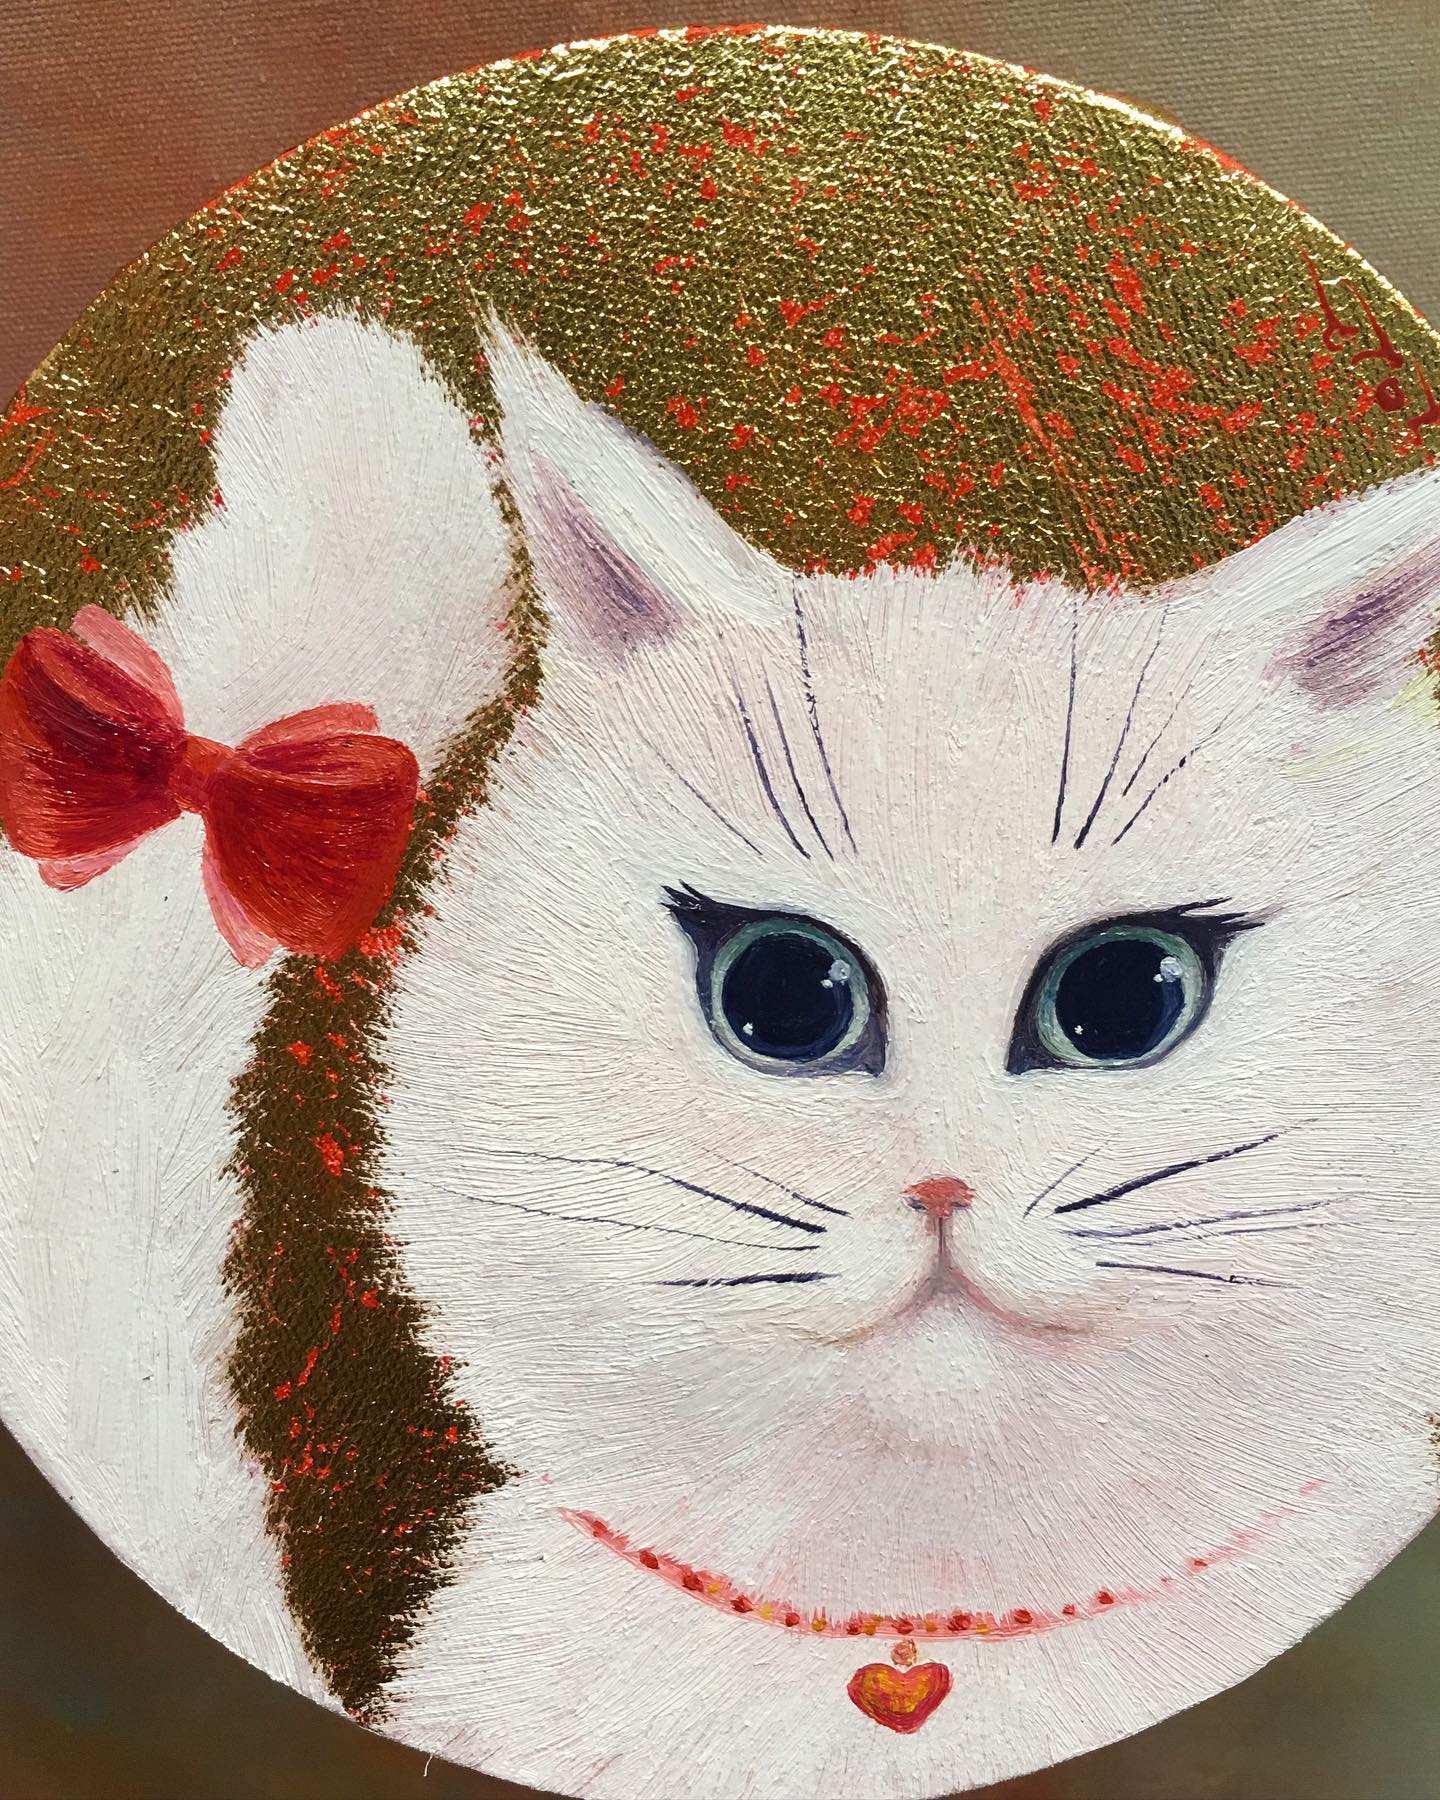 Cat portrait by order. 20-30cm